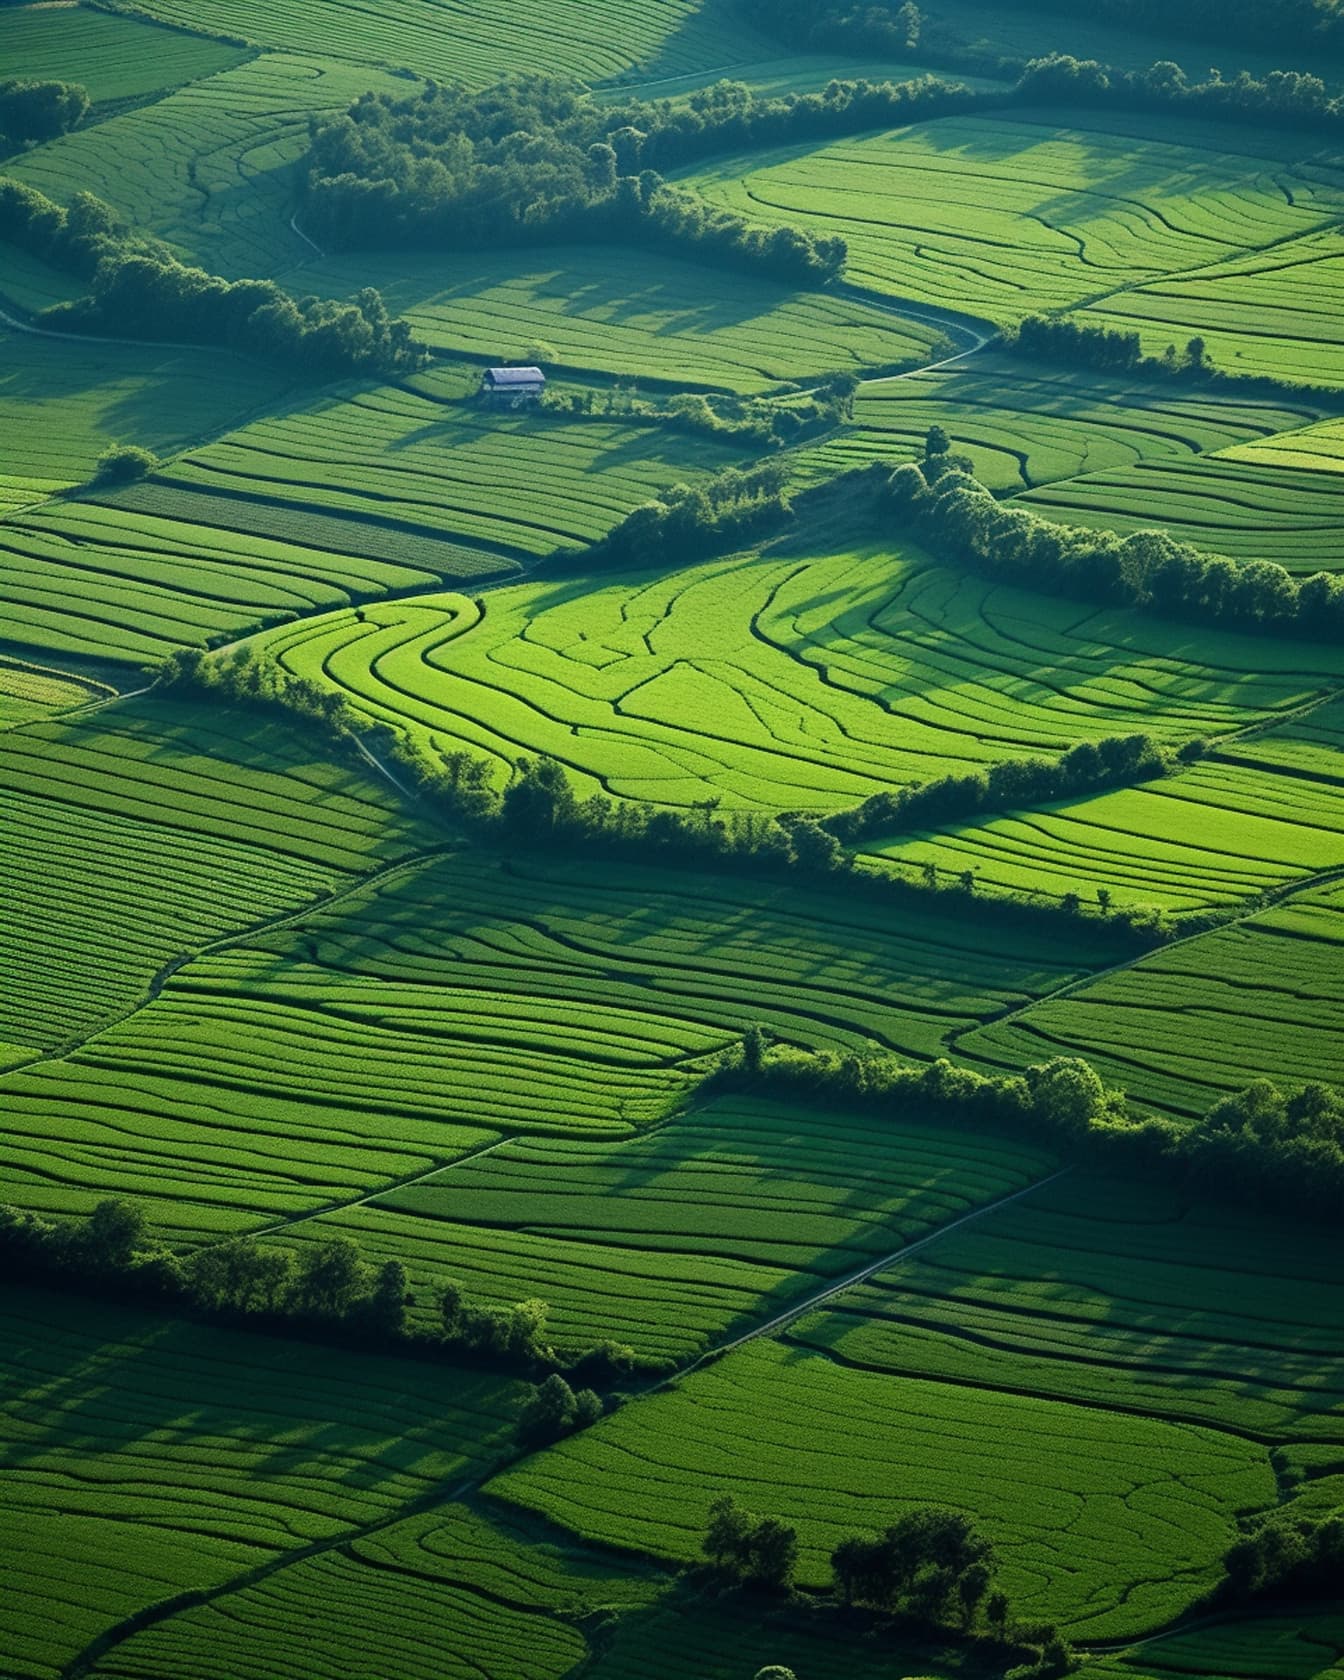 ทุ่งเกษตรสีเขียวเข้มในชนบทบนเนินเขา